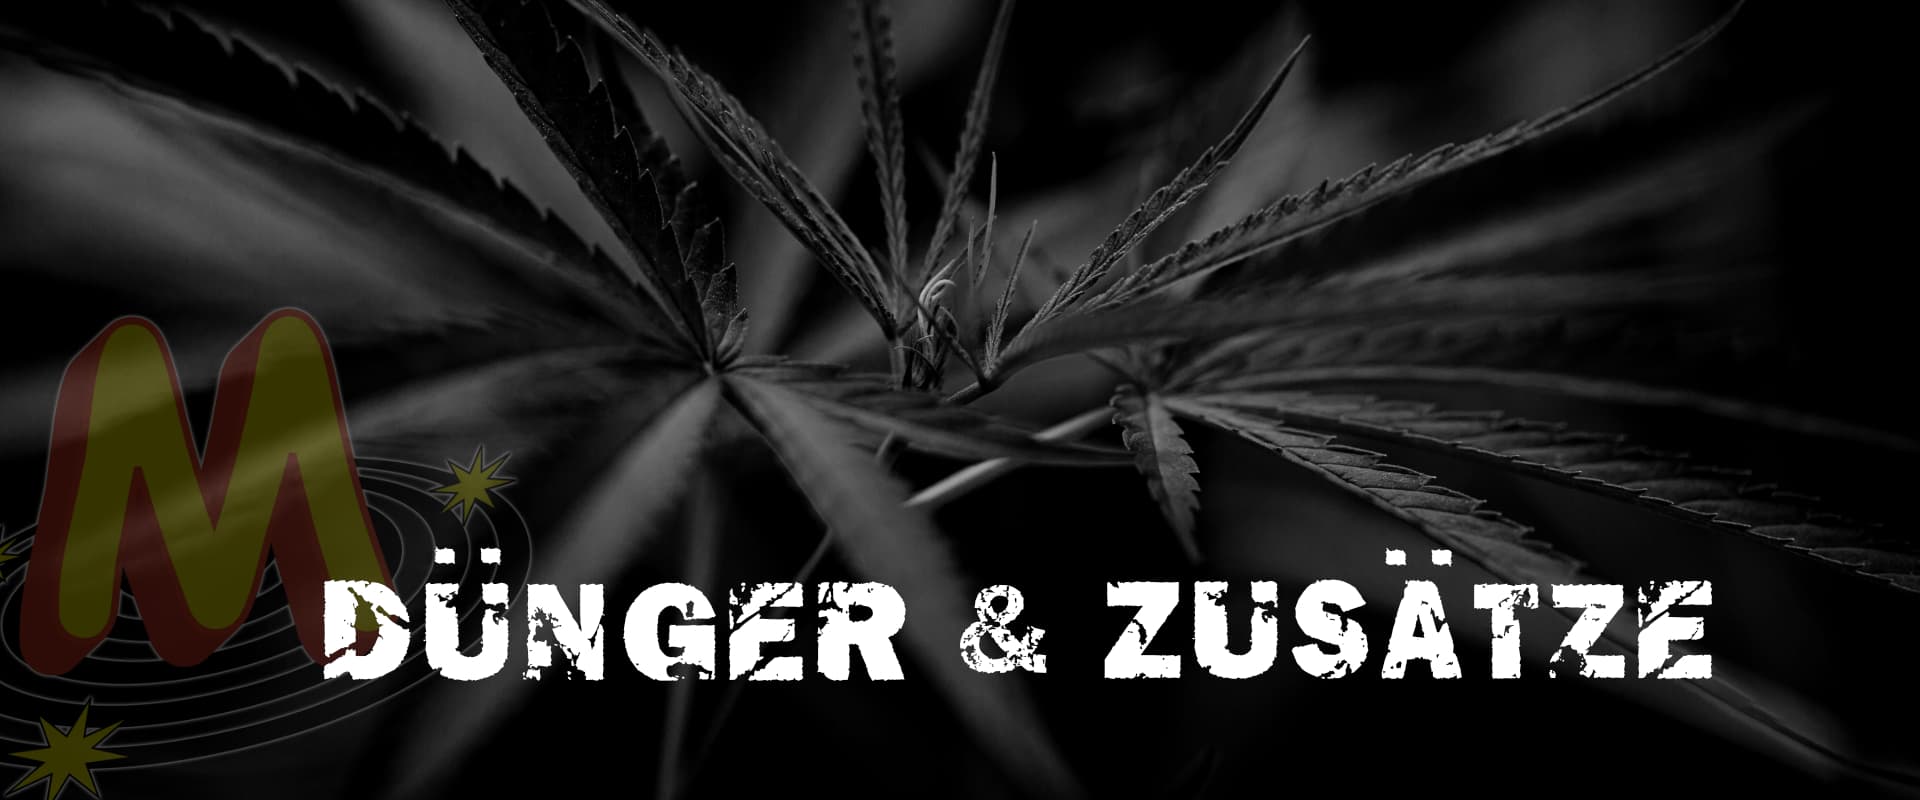 Dünger_Zusätze_Banner